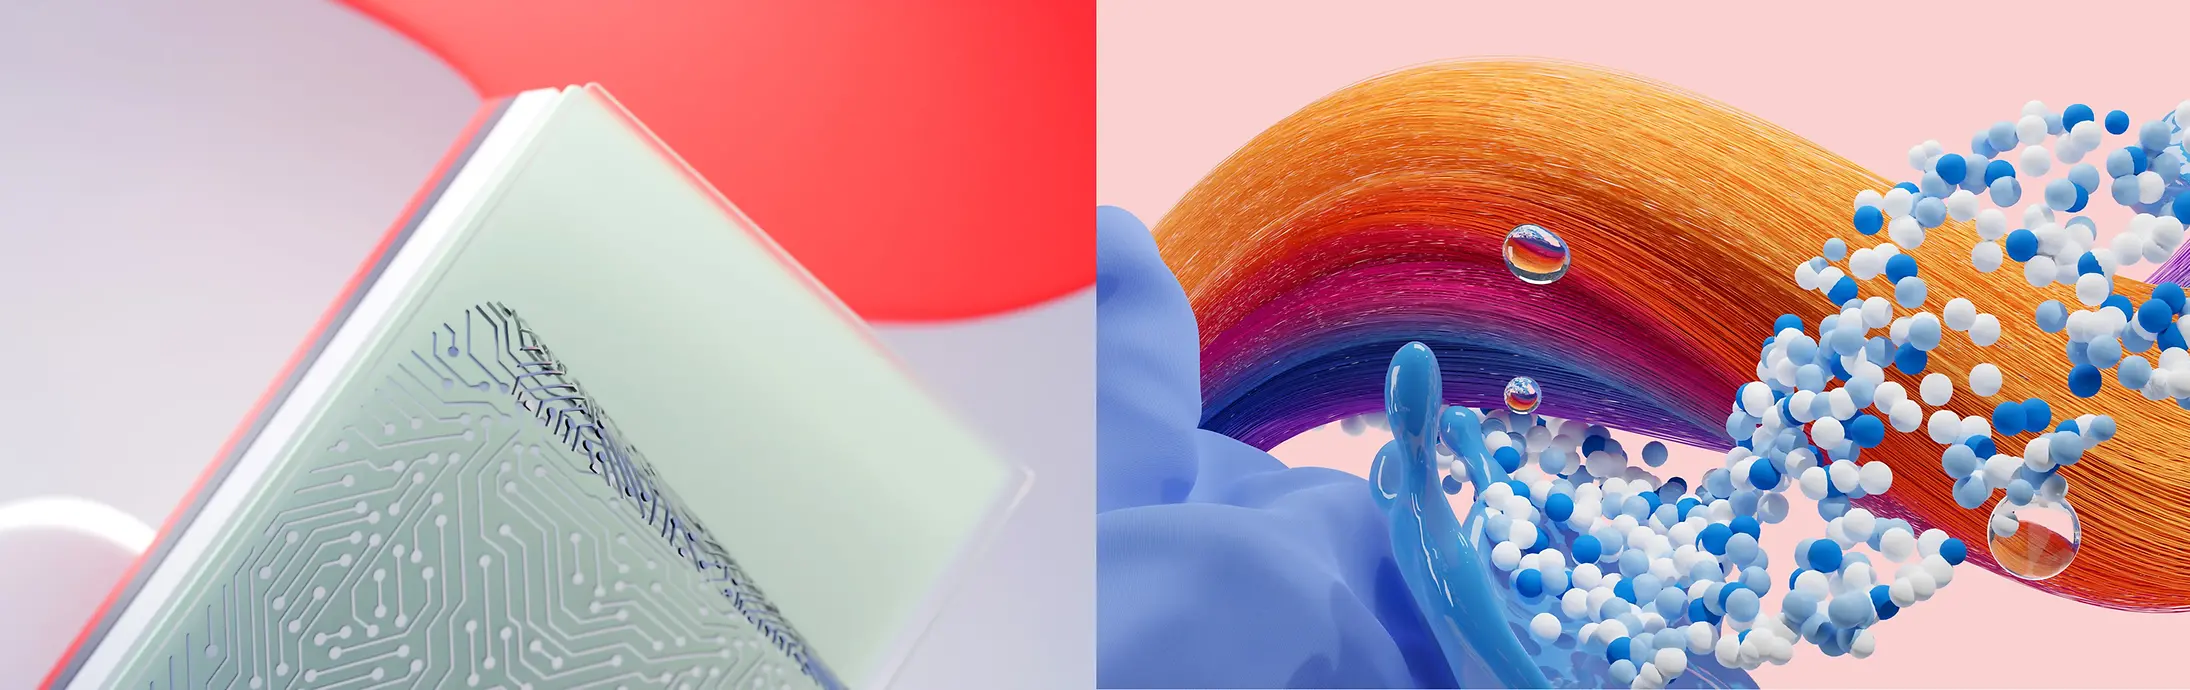 Henkel'in iş birimleri olan Yapıştırıcı Teknolojiler, Saç ve Çamaşır & Ev Bakım’ı temsil eden soyut bir görsel.